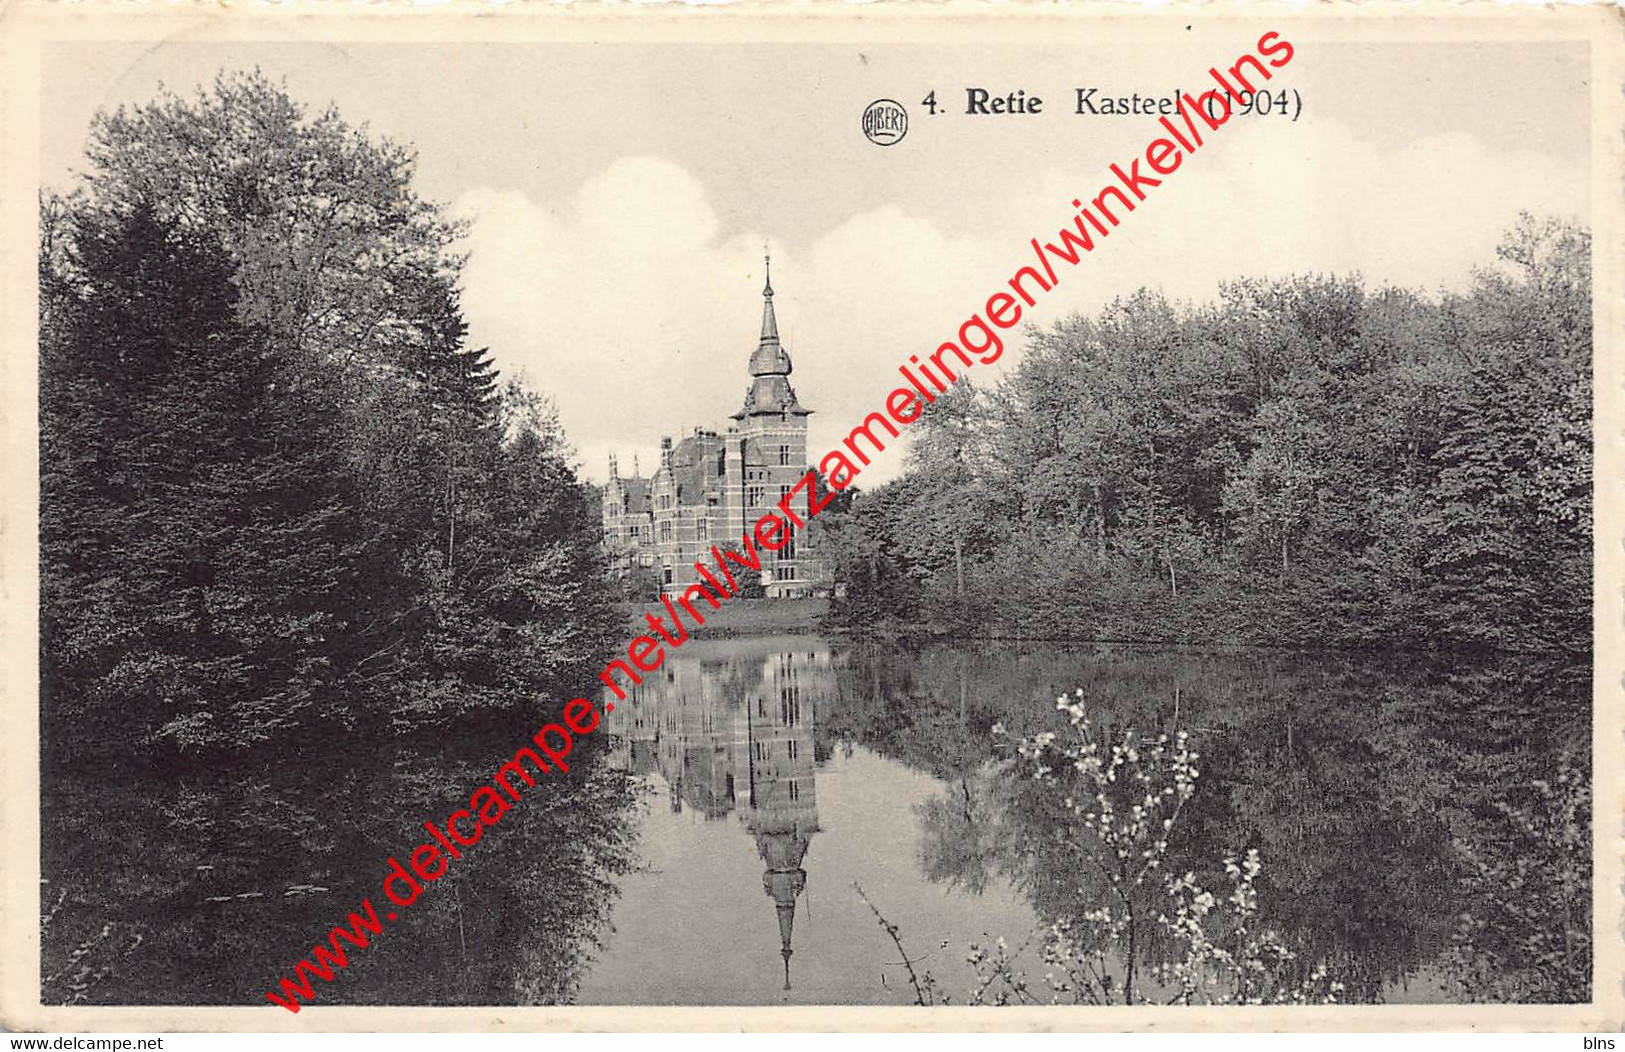 Kasteel - 1904 - Retie - Retie